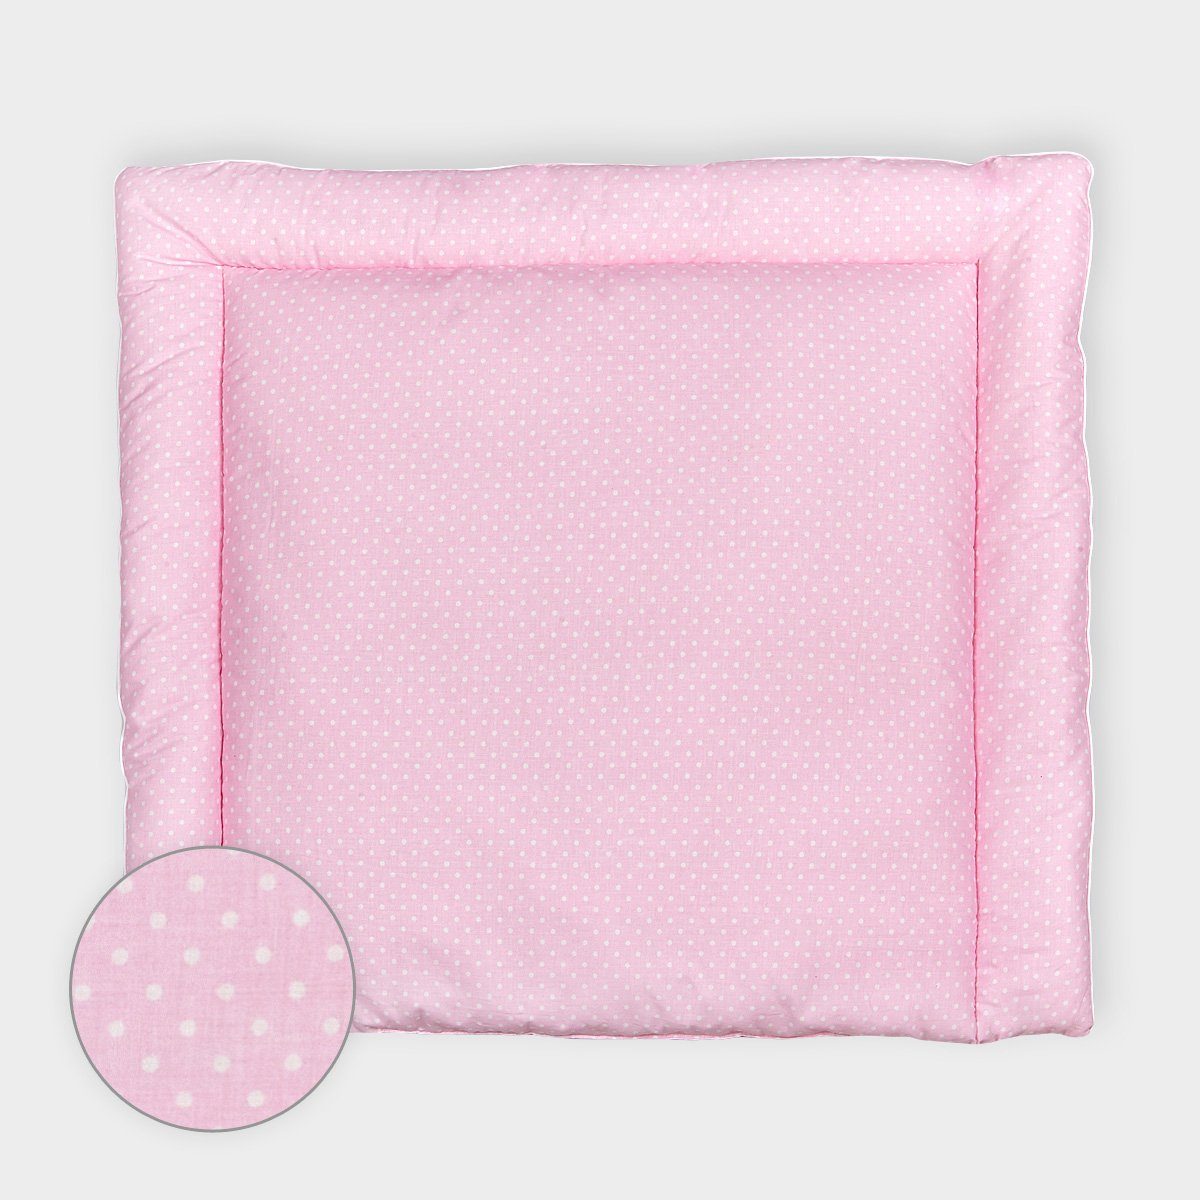 KraftKids Wickelauflage weiße Punkte auf Rosa, extra Weich (500 g/qm), mit antiallergenem Vlies gefüllt